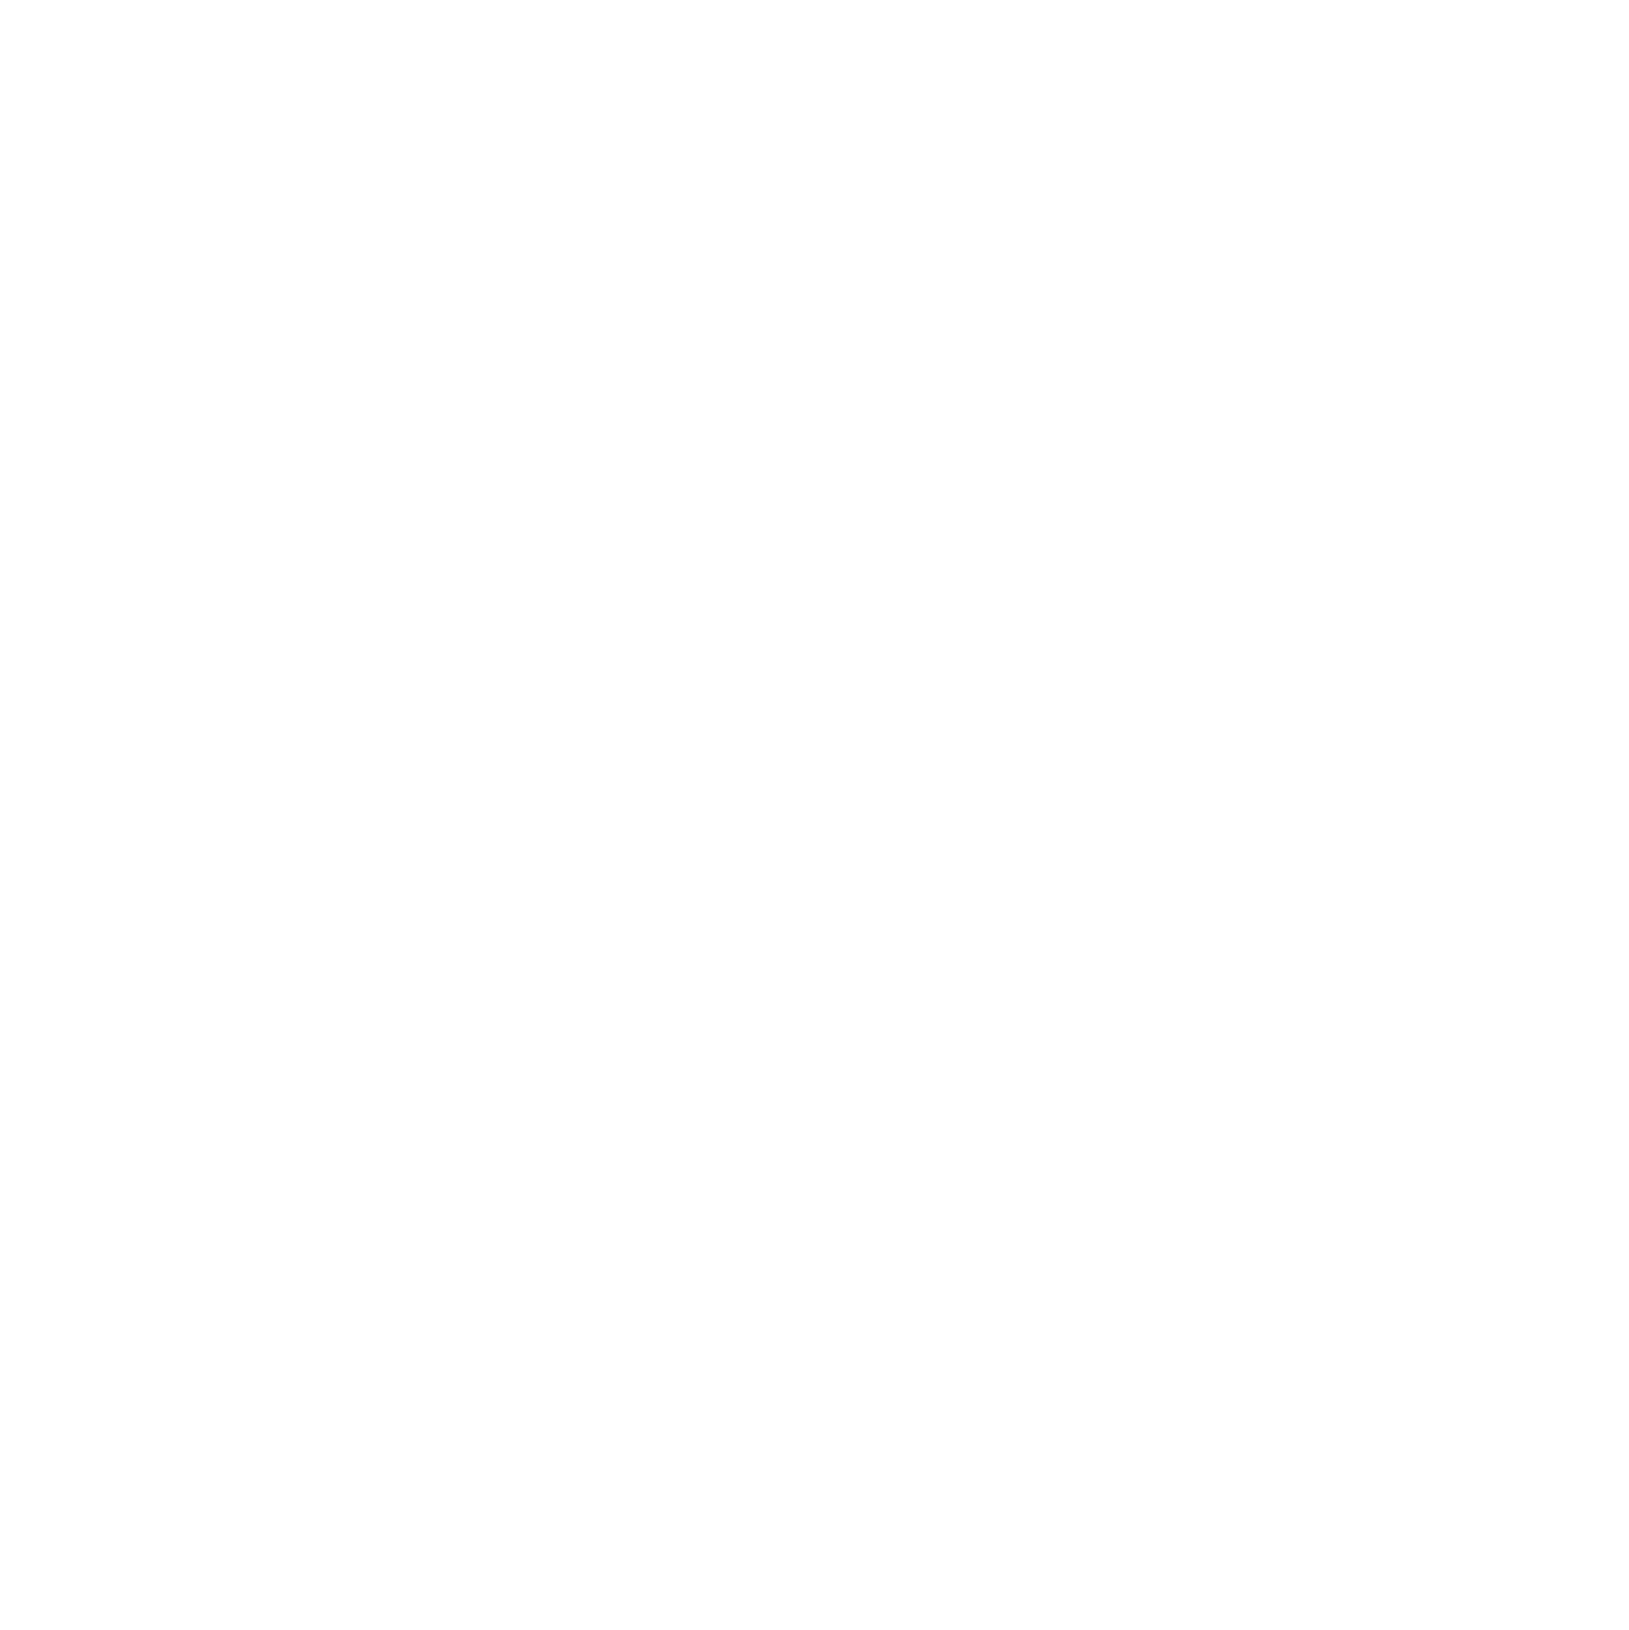 Definitive Healthcare logo for dark backgrounds (transparent PNG)